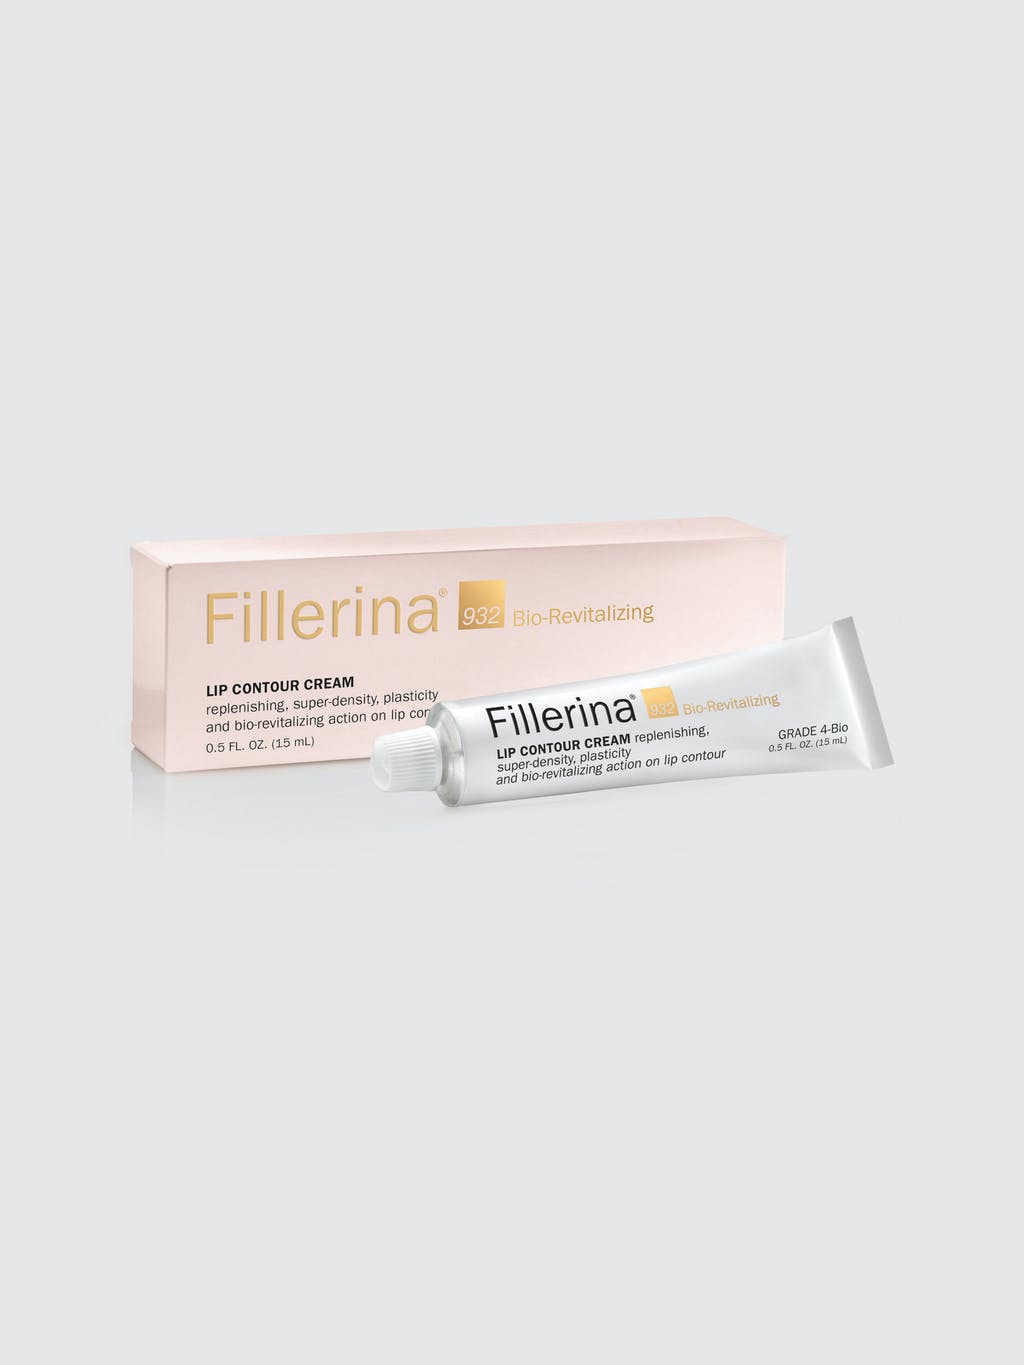 Fillerina® 932 Bio-Revitalizing Lip Contour Cream Grade 4